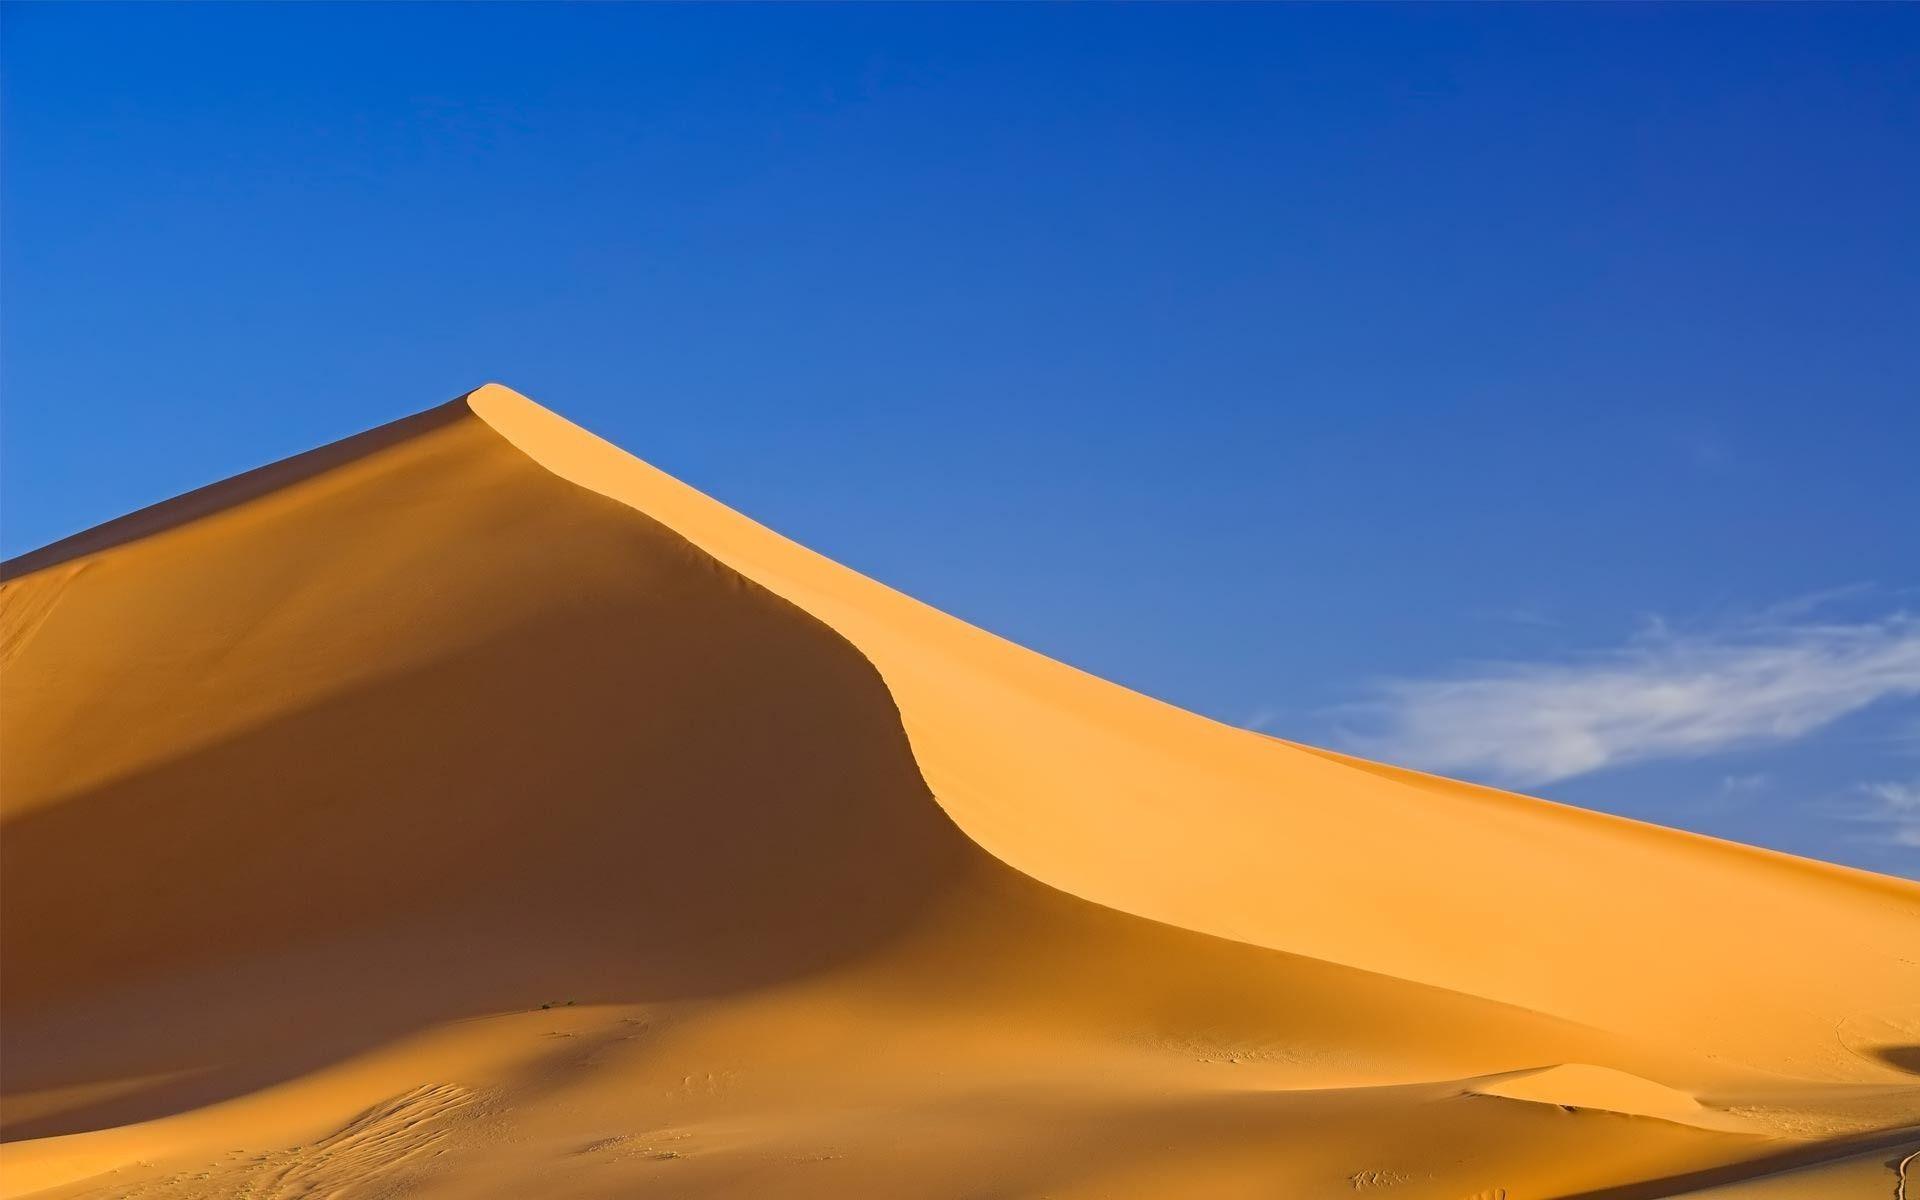 Sand dune wallpaper #